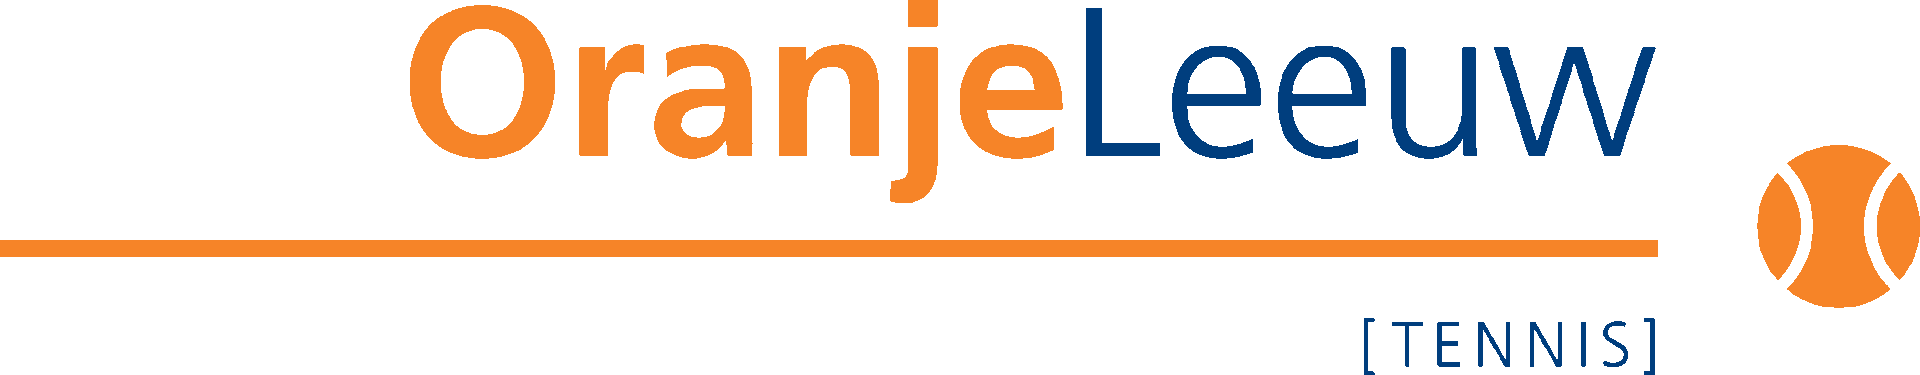 logo-tennis